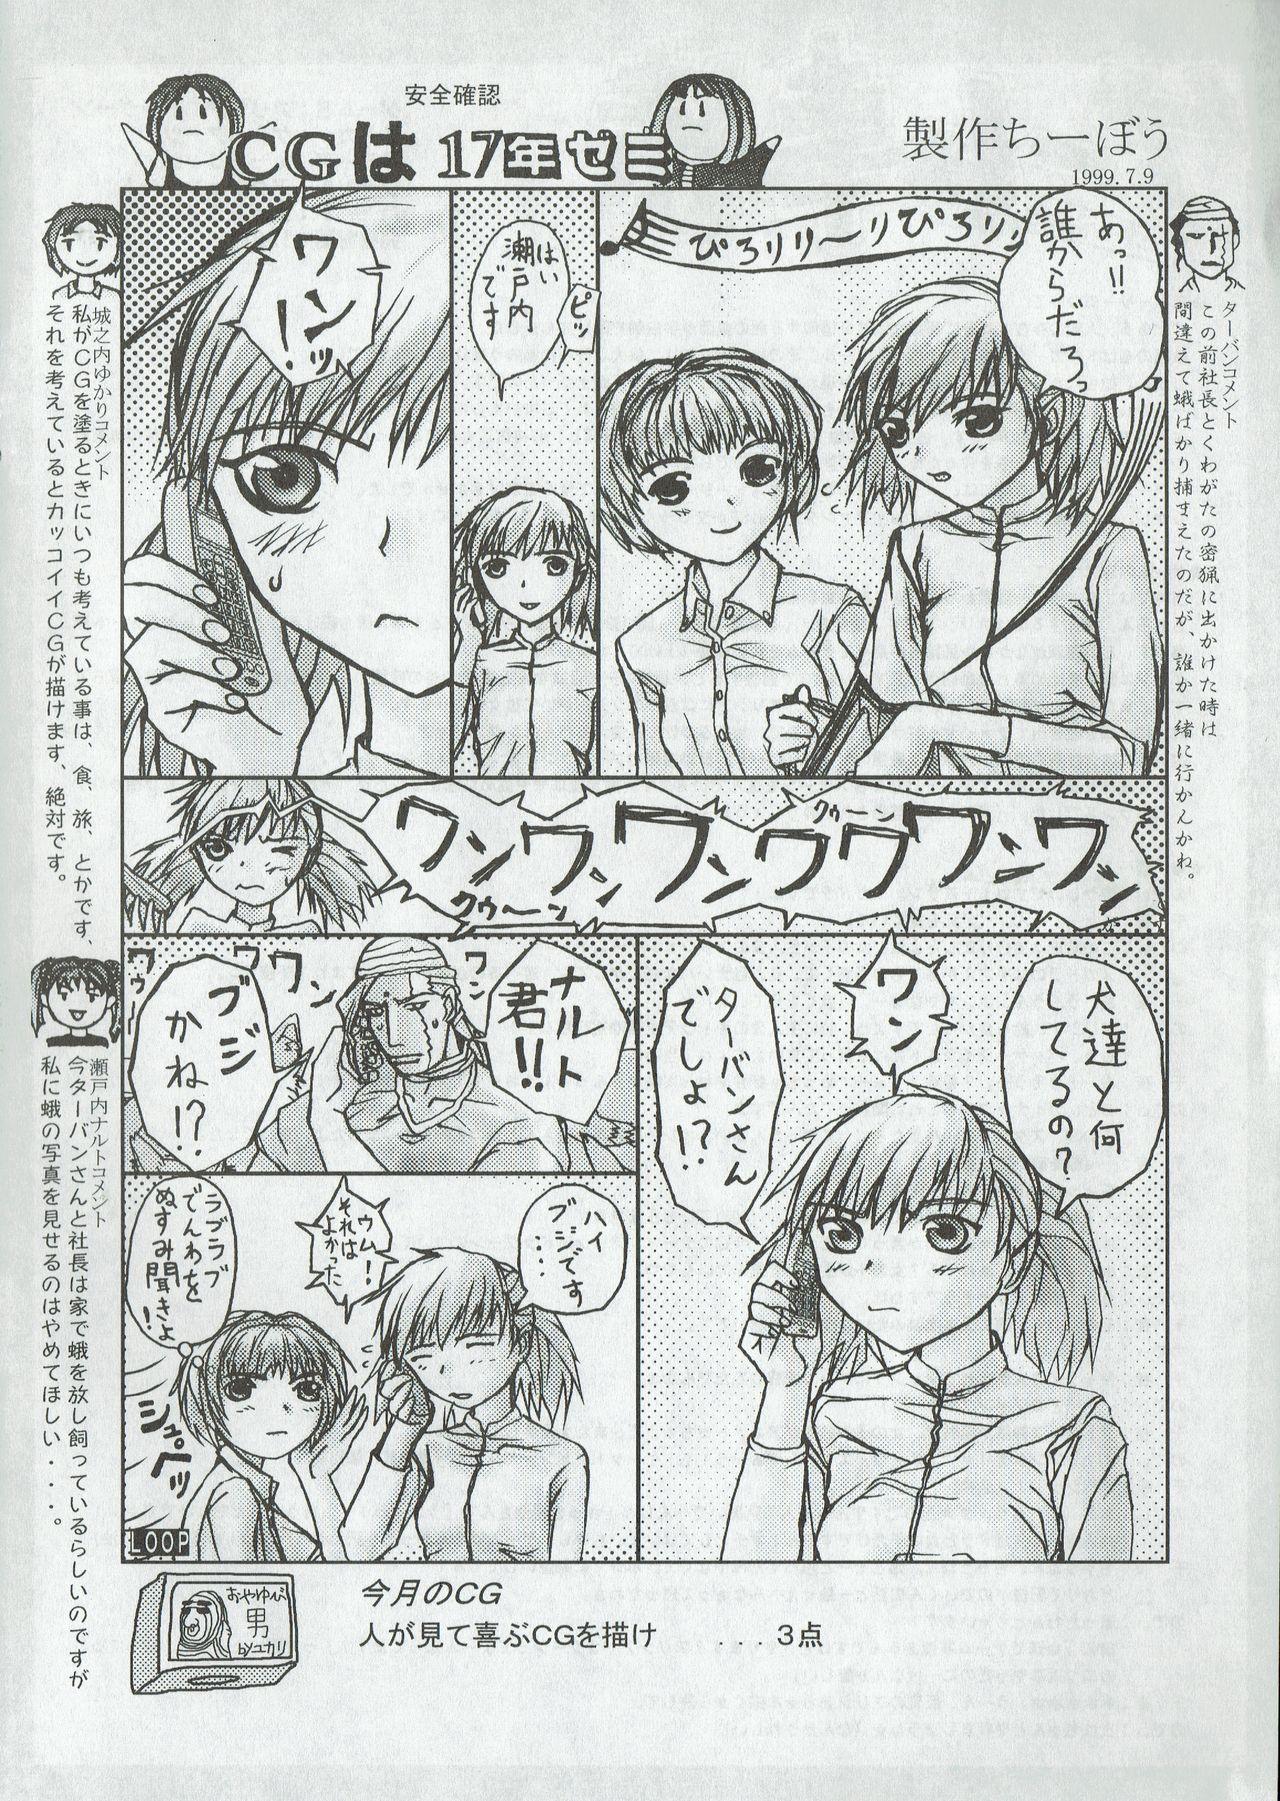 Arisu no Denchi Bakudan Vol. 07 18